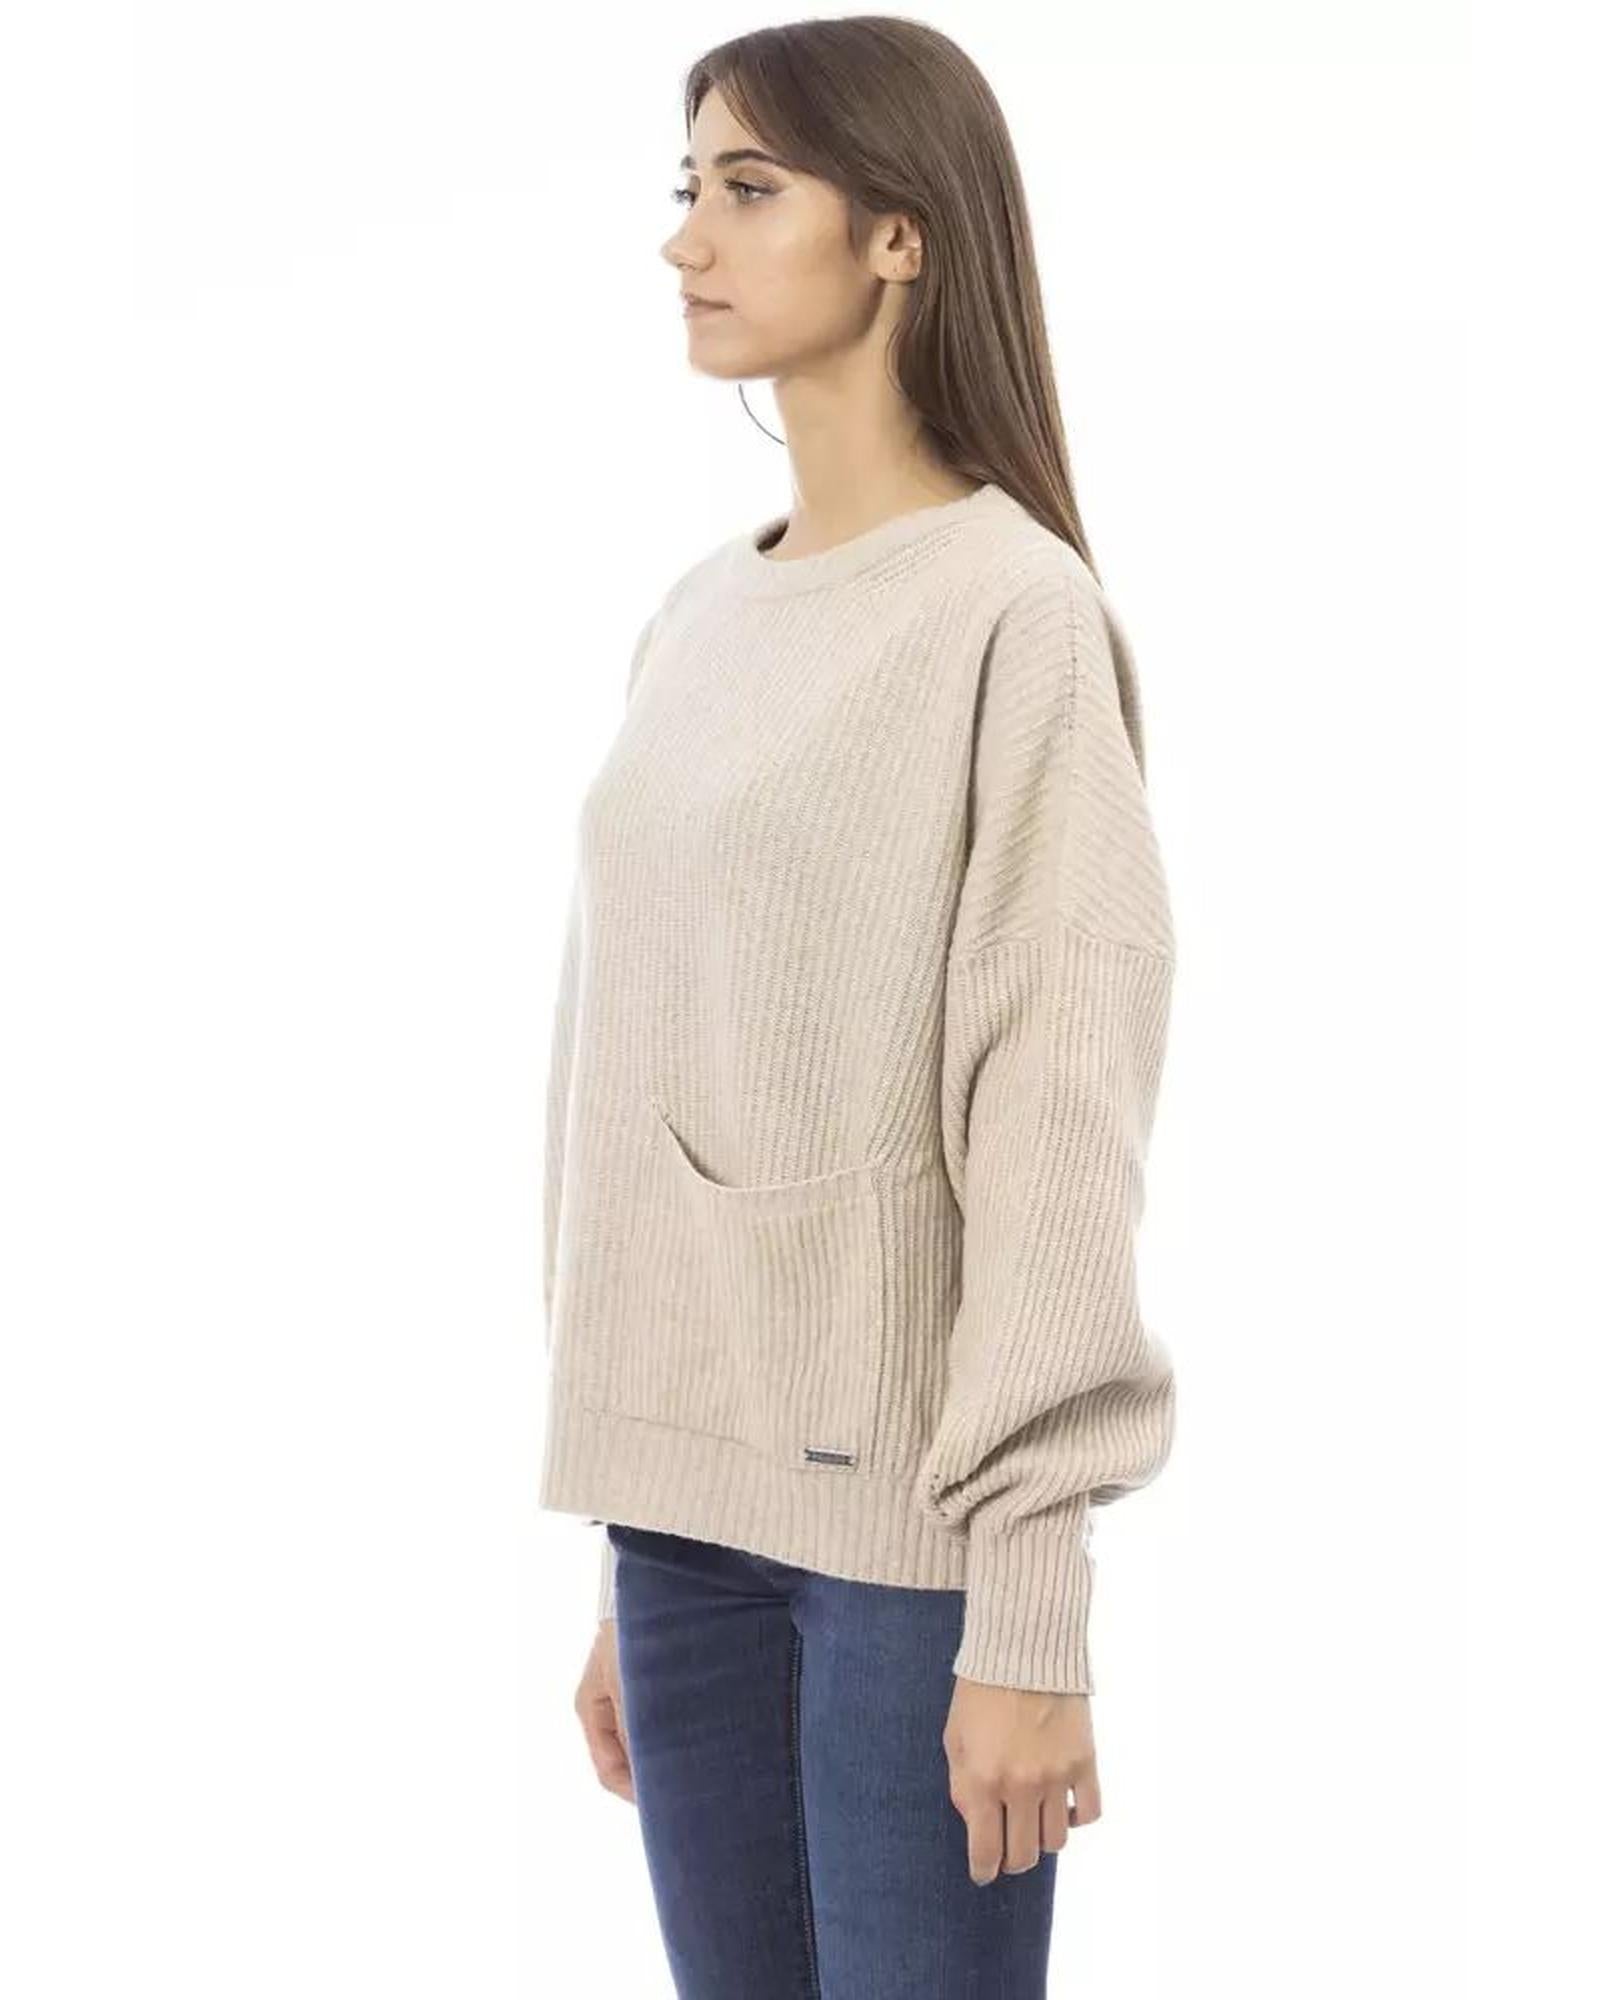 Women's Beige Wool Sweater - M